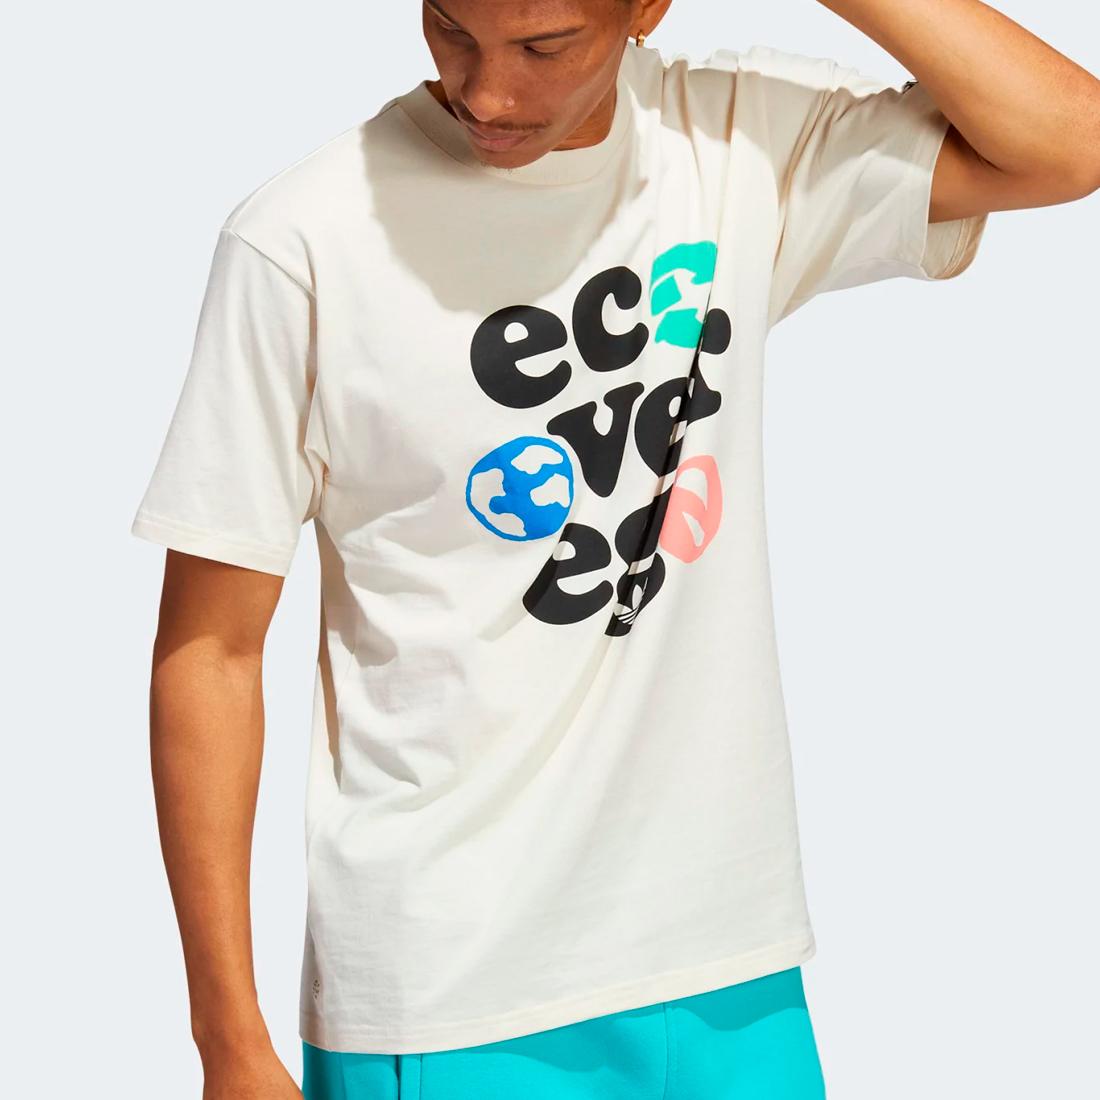 Adidas Eco Over Ego tee nondye/multco - Shop-Tetuan